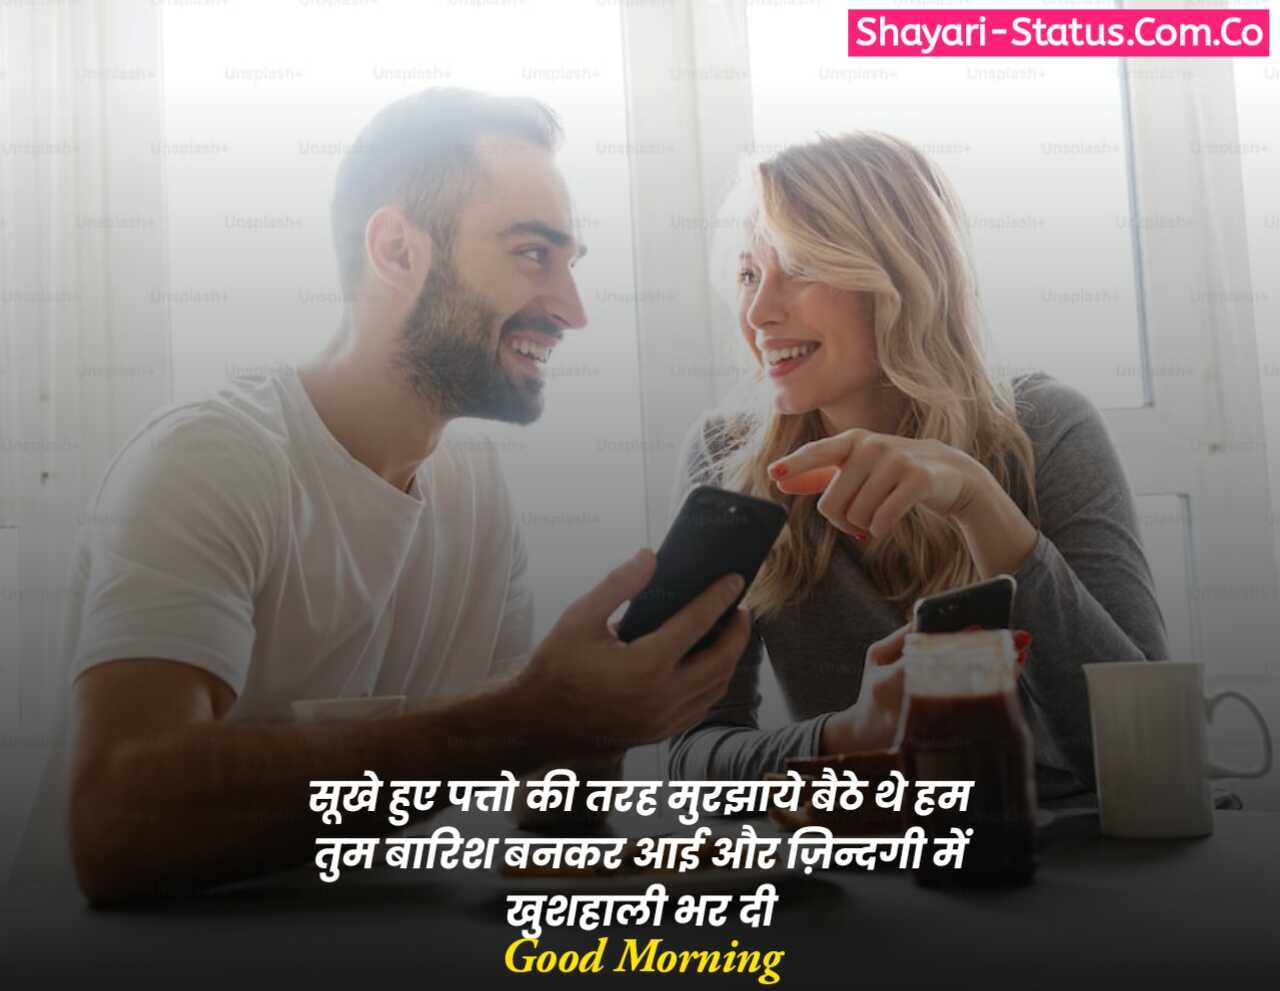 Good morning shayari for wife in hindi